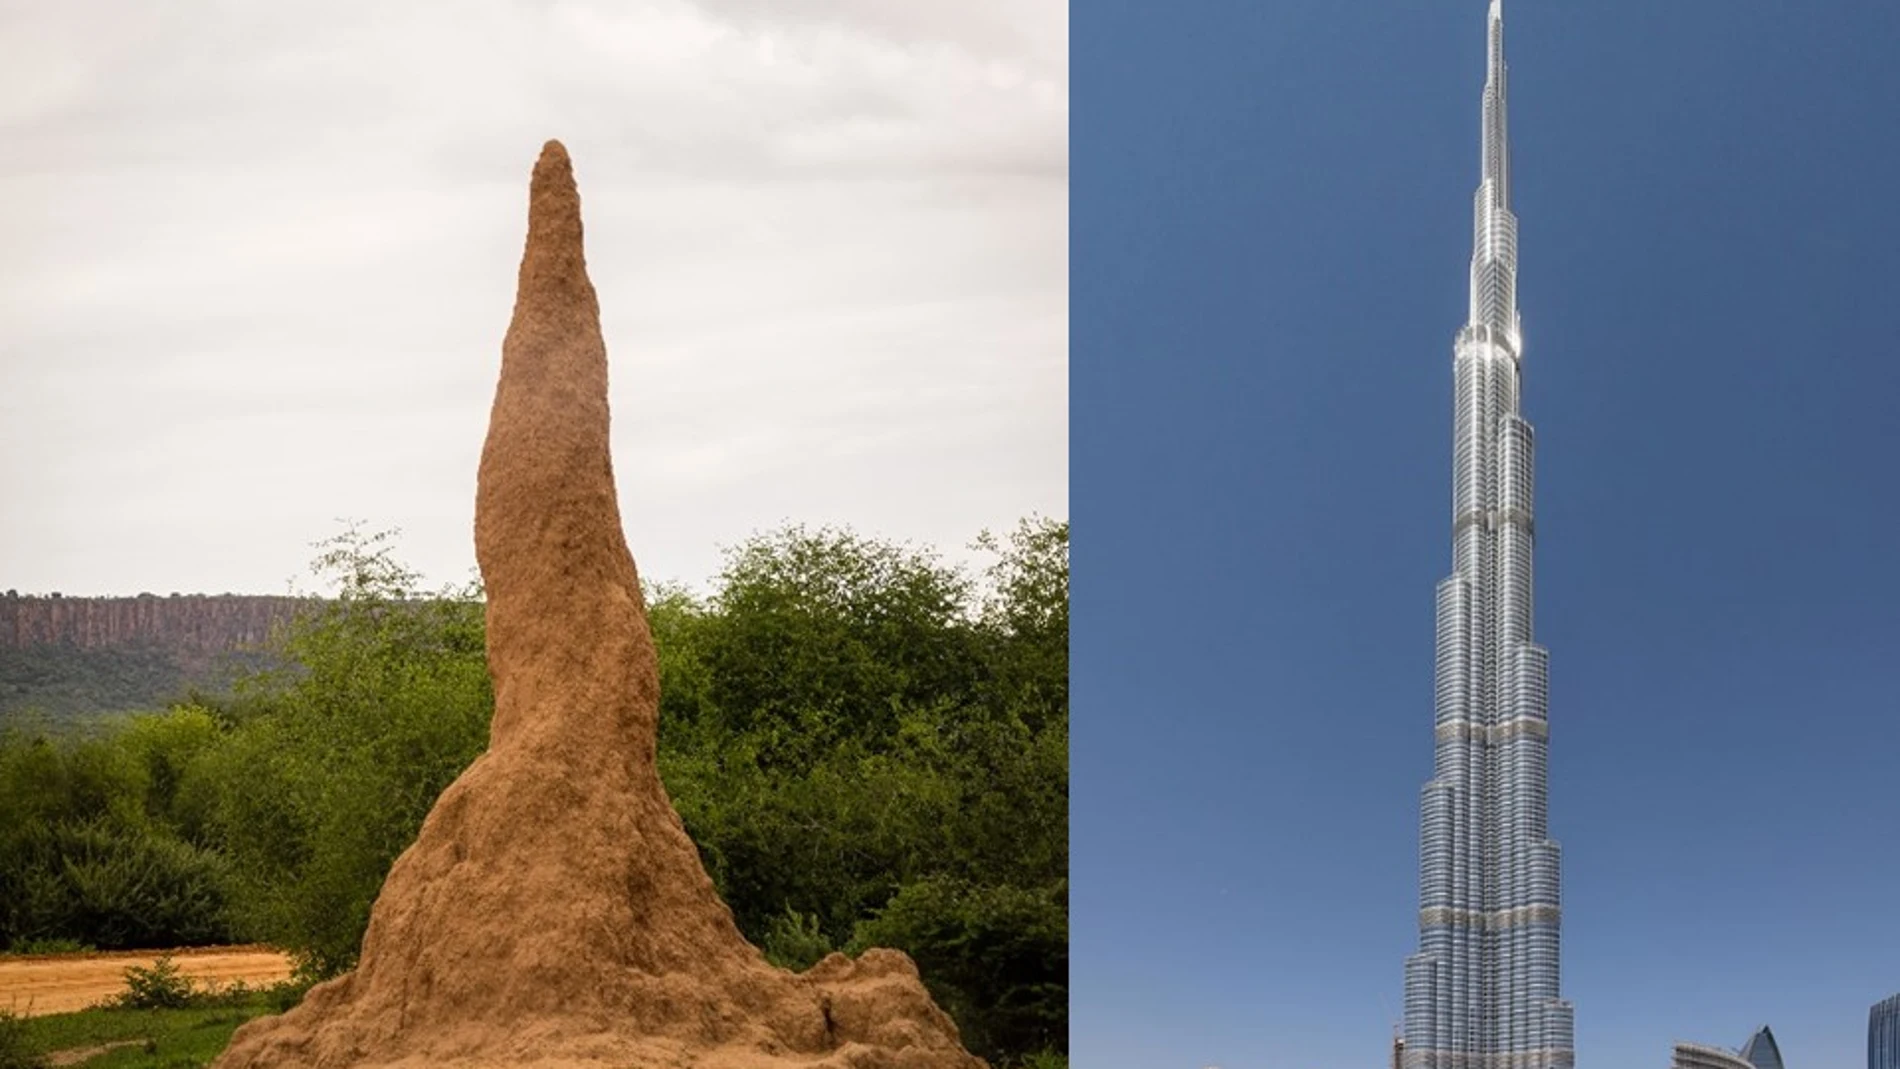 A la izquierda, un termitero en Waterberg, Namibia. A la derecha, el Burj Khalifa, el edificio que ostenta el récord del mundo de altitud con 829,8m en Dubai, Emiratos Árabes.